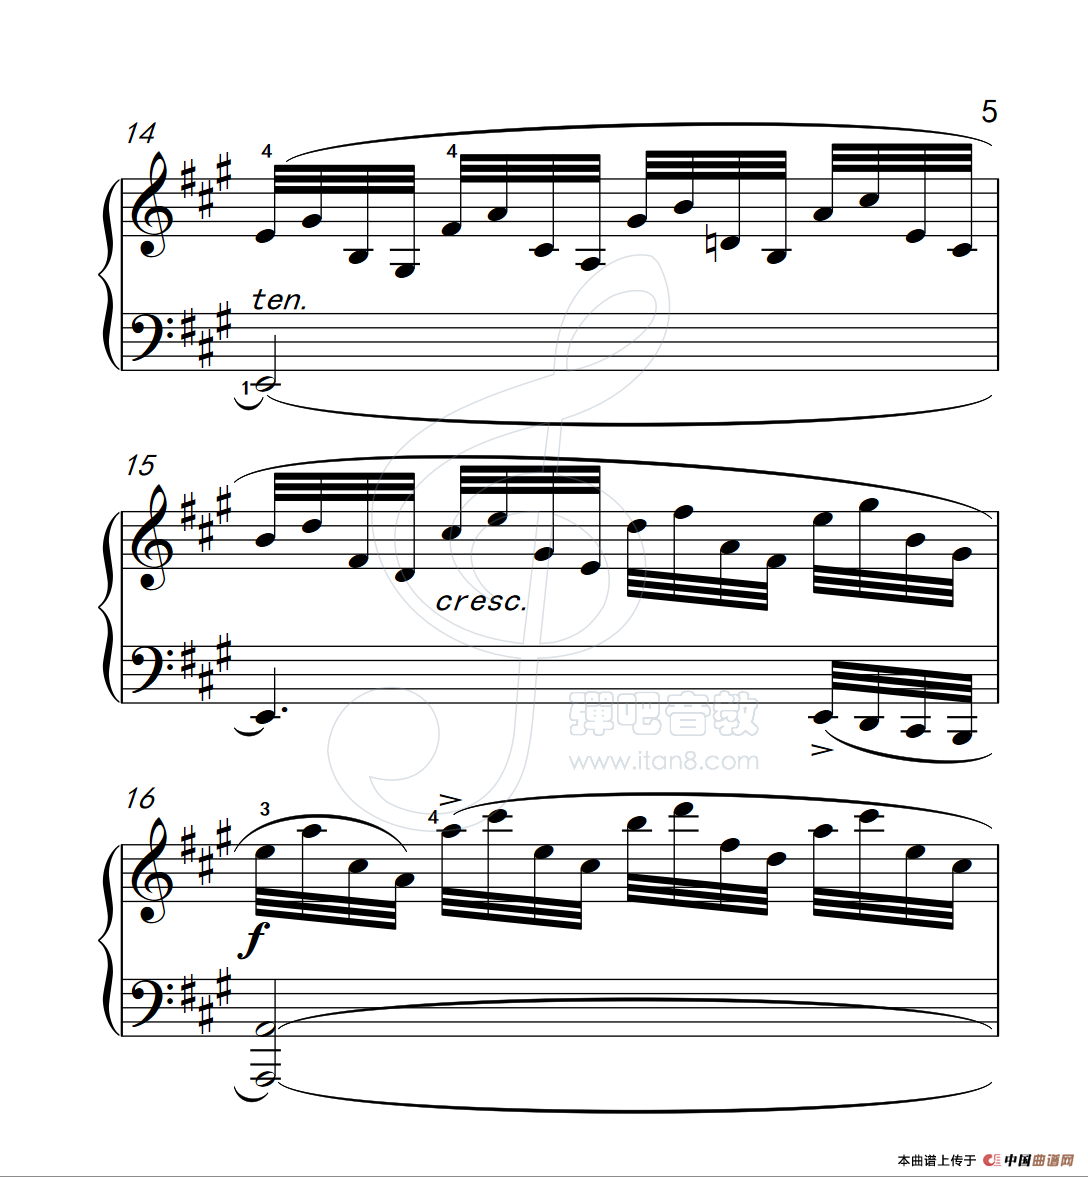 《练习曲 38》钢琴曲谱图分享